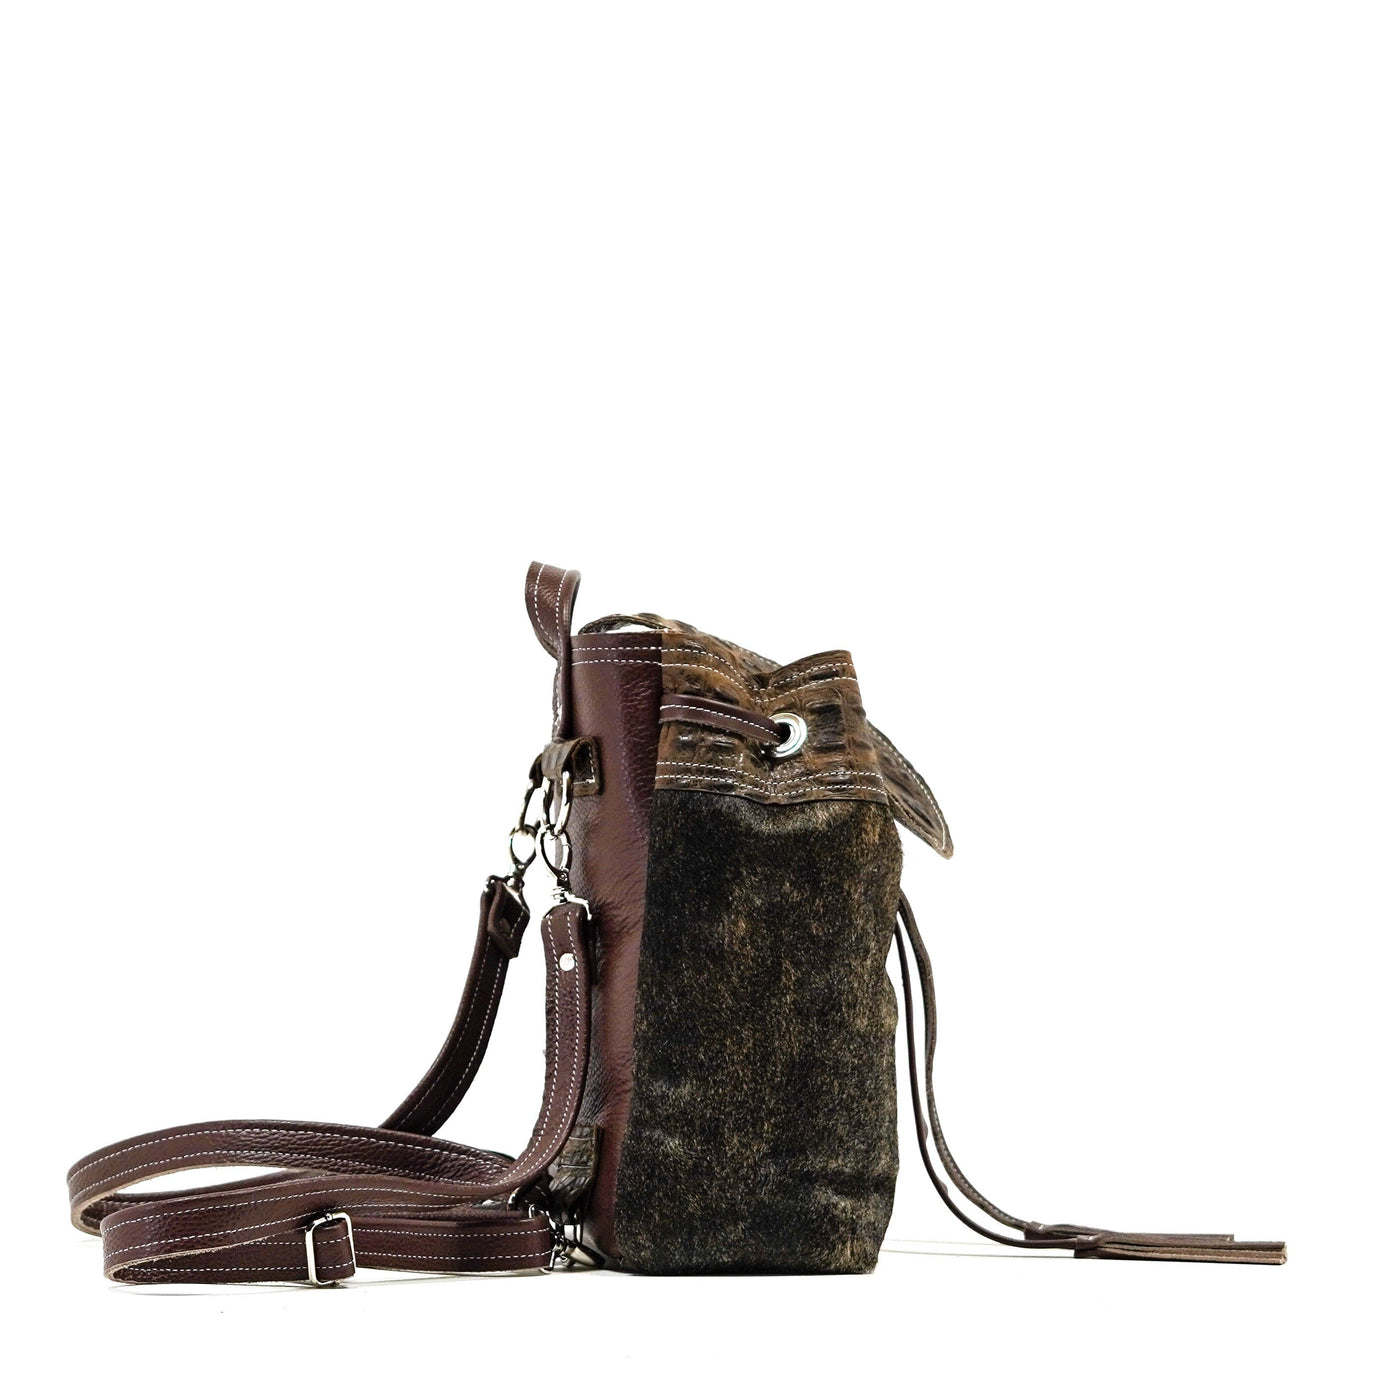 Mini Kelsea Backpack - Exotic Brindle w/ Saddle Croc-Mini Kelsea Backpack-Western-Cowhide-Bags-Handmade-Products-Gifts-Dancing Cactus Designs